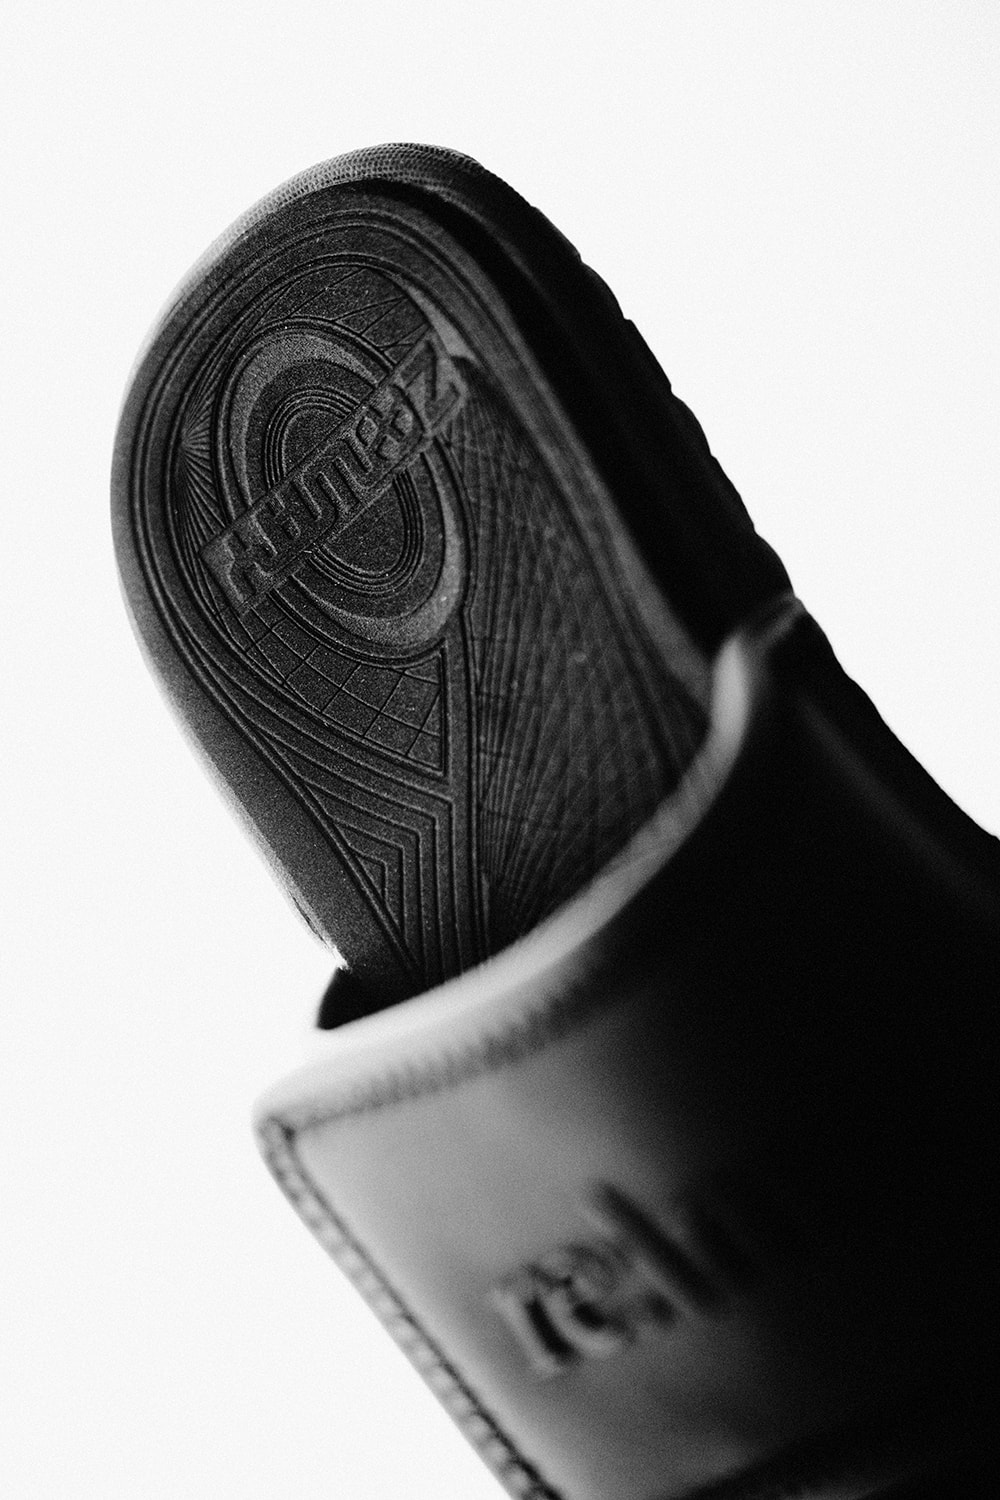 REMIX 攜手 ZABWAY 打造最新夏季聯名拖鞋